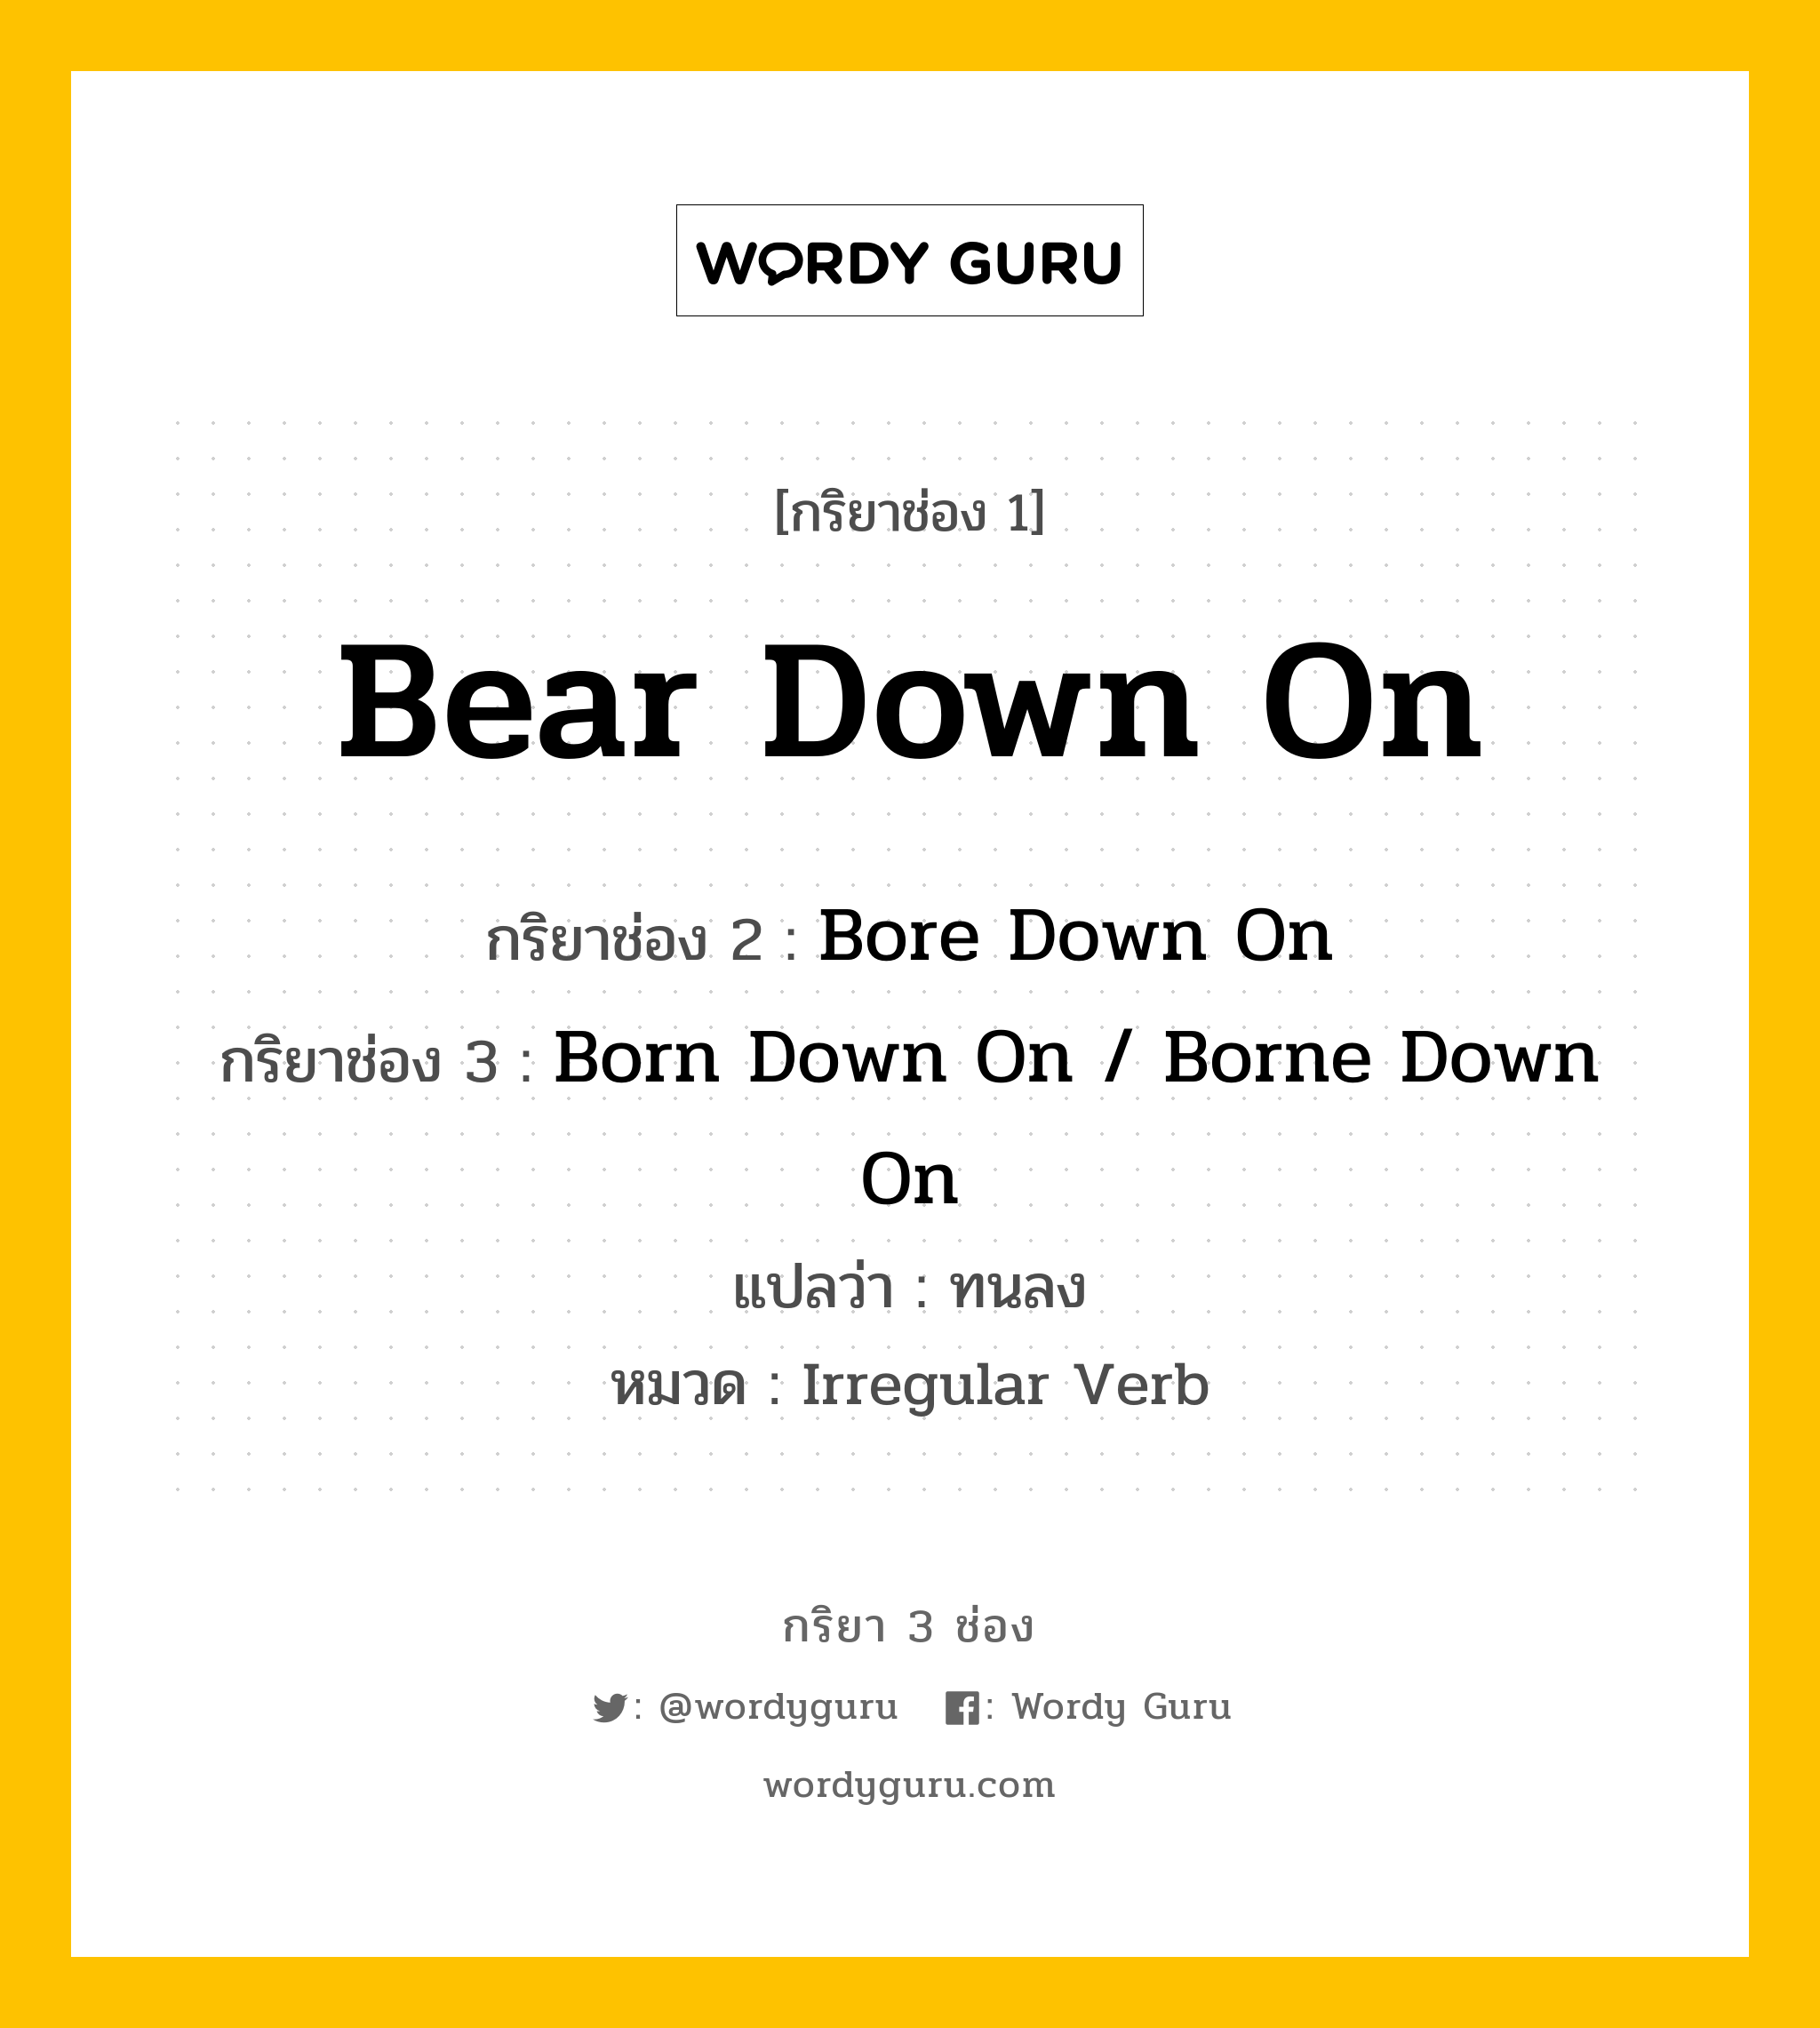 กริยา 3 ช่อง: Bear Down On ช่อง 2 Bear Down On ช่อง 3 คืออะไร, กริยาช่อง 1 Bear Down On กริยาช่อง 2 Bore Down On กริยาช่อง 3 Born Down On / Borne Down On แปลว่า ทนลง หมวด Irregular Verb หมวด Irregular Verb